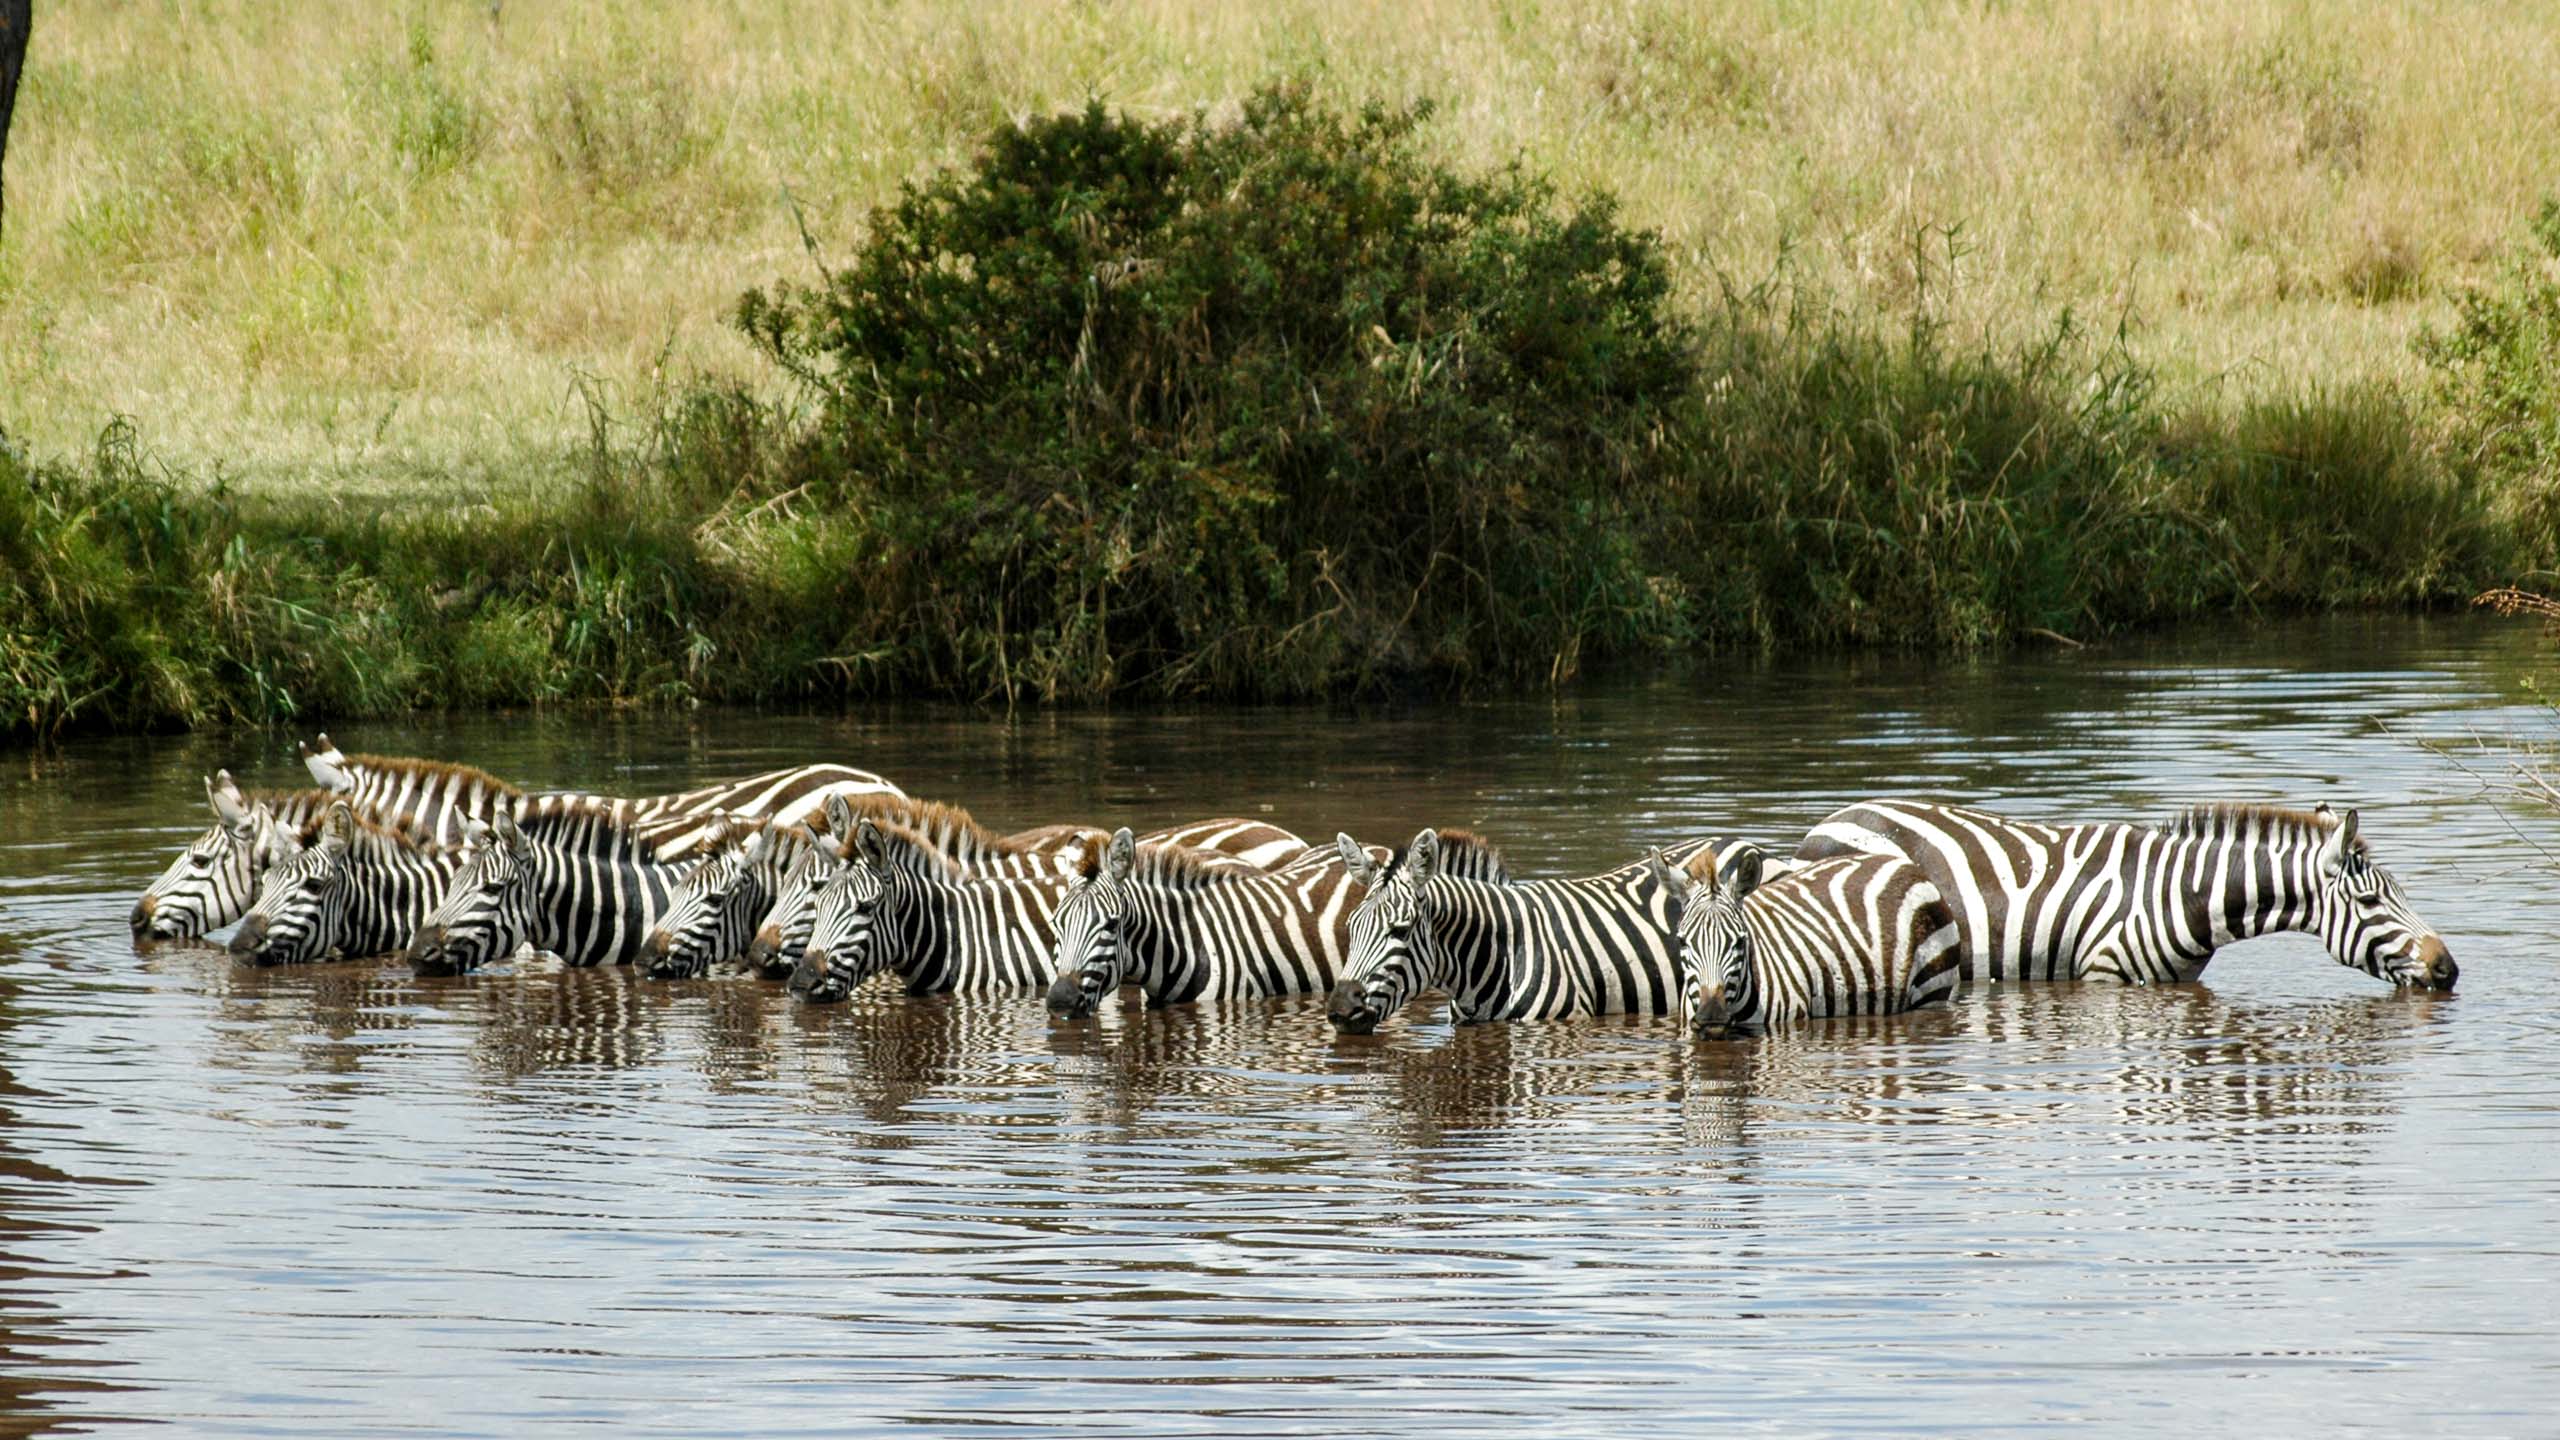 Group of zebras bathe in pond